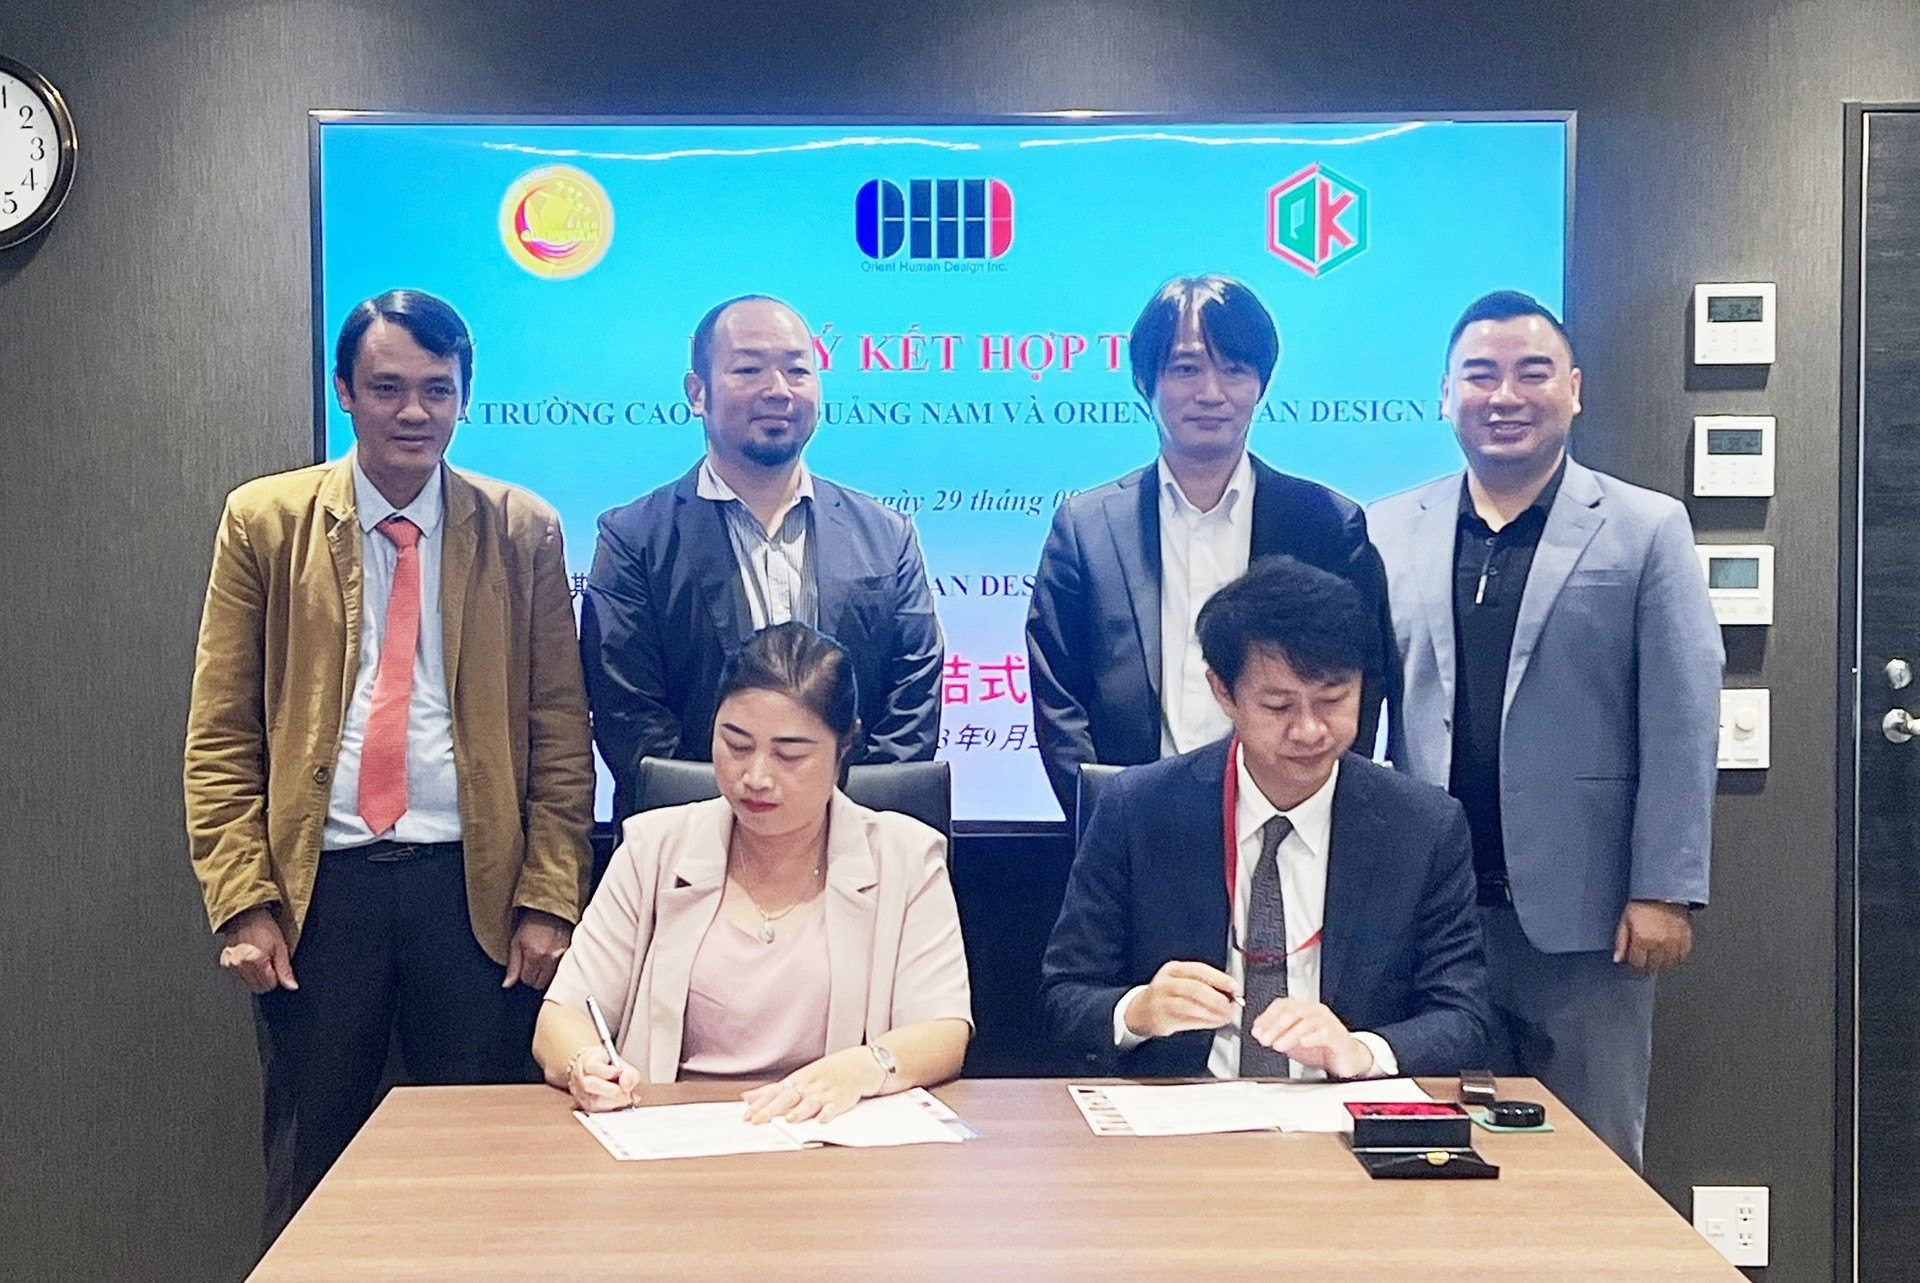 Trường Cao đẳng Quảng Nam và Hiệp hội Orient Human Design Incorporated ký kết thỏa thuận hợp tác nhân chuyến làm việc.